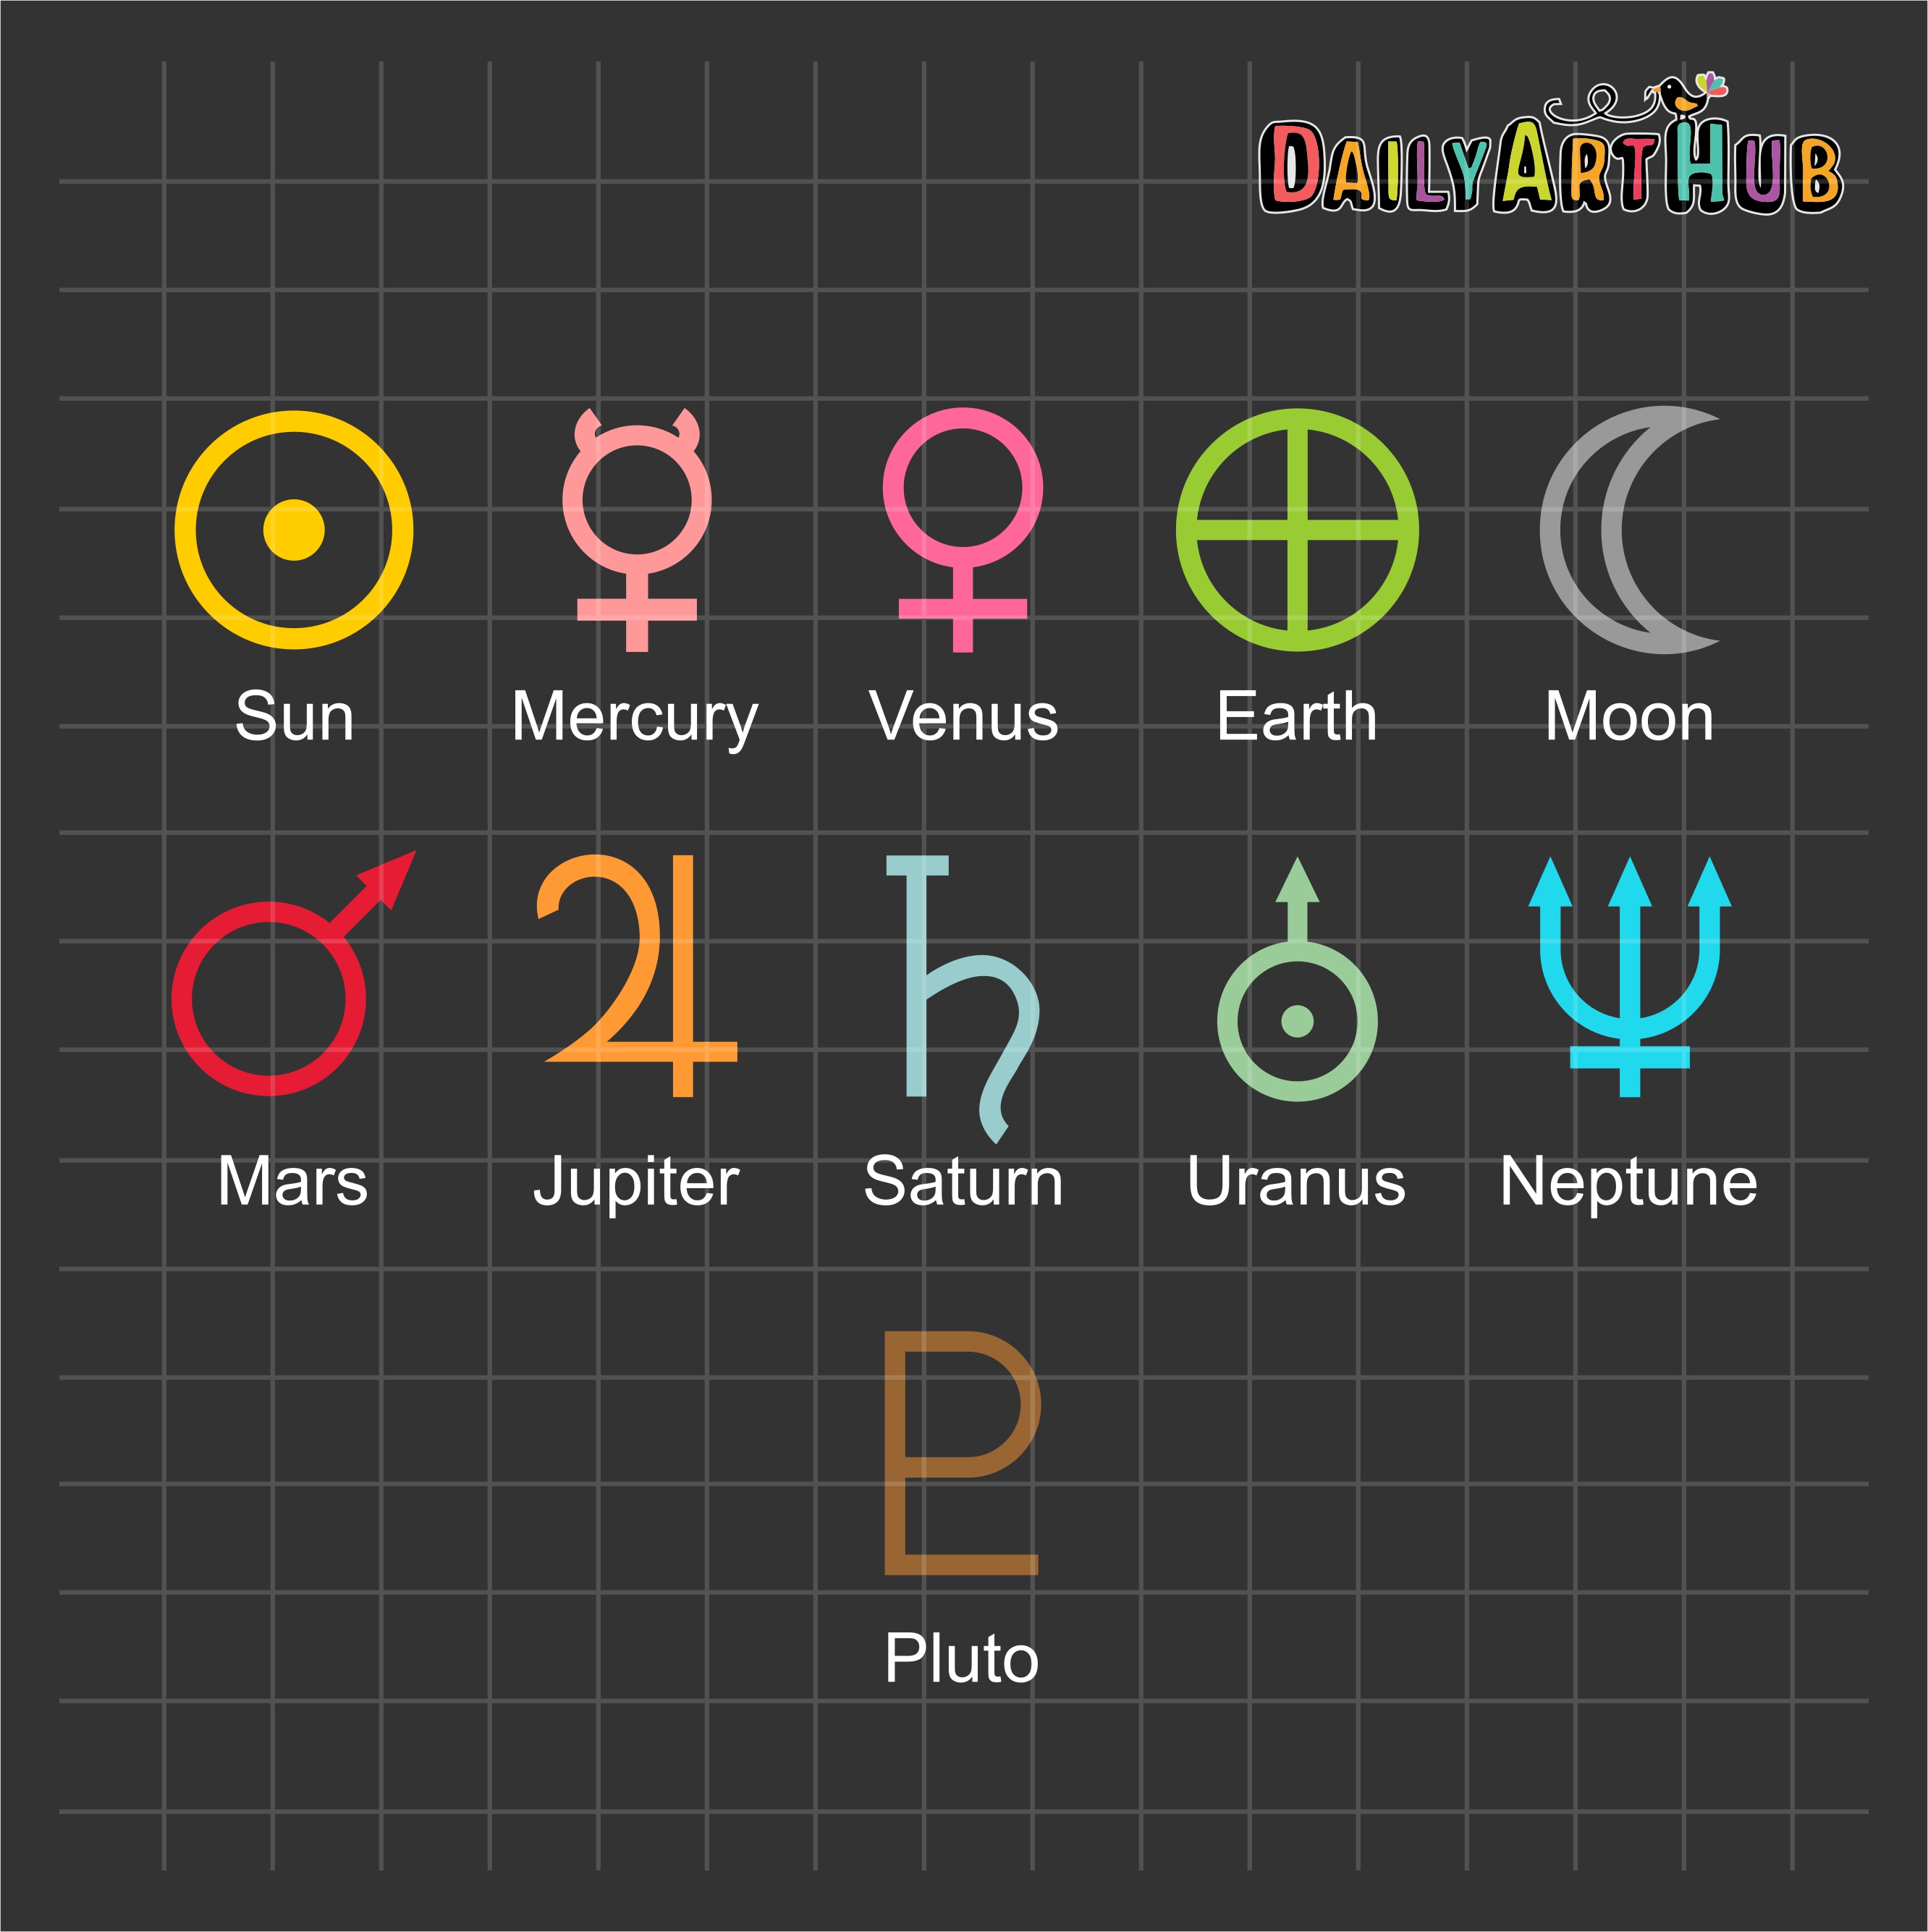 Simbolos De Los Planetas